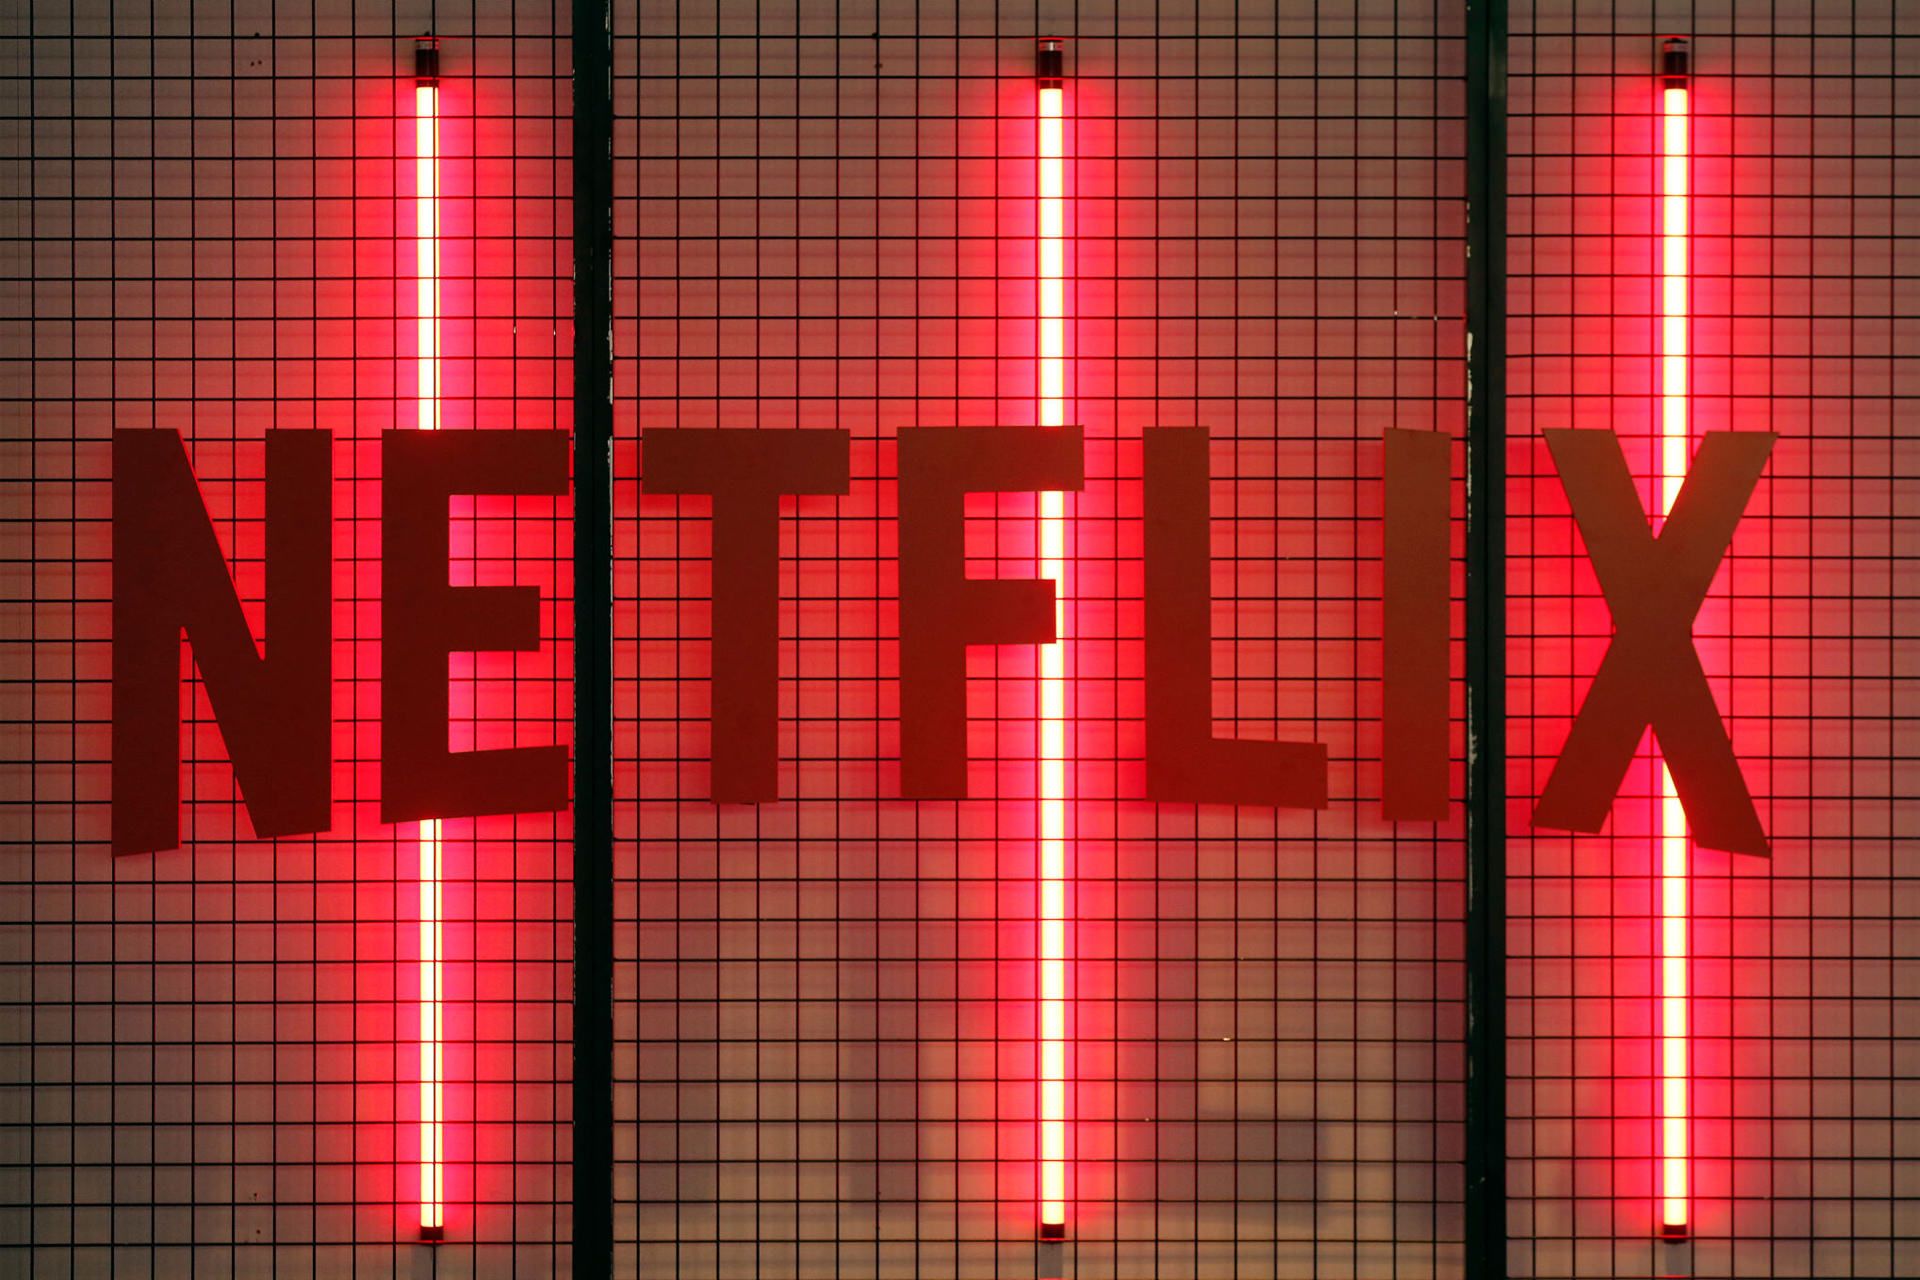 لوگو نتفلیکس / Netflix روی دیوار در مراسم هفته بازی پاریس